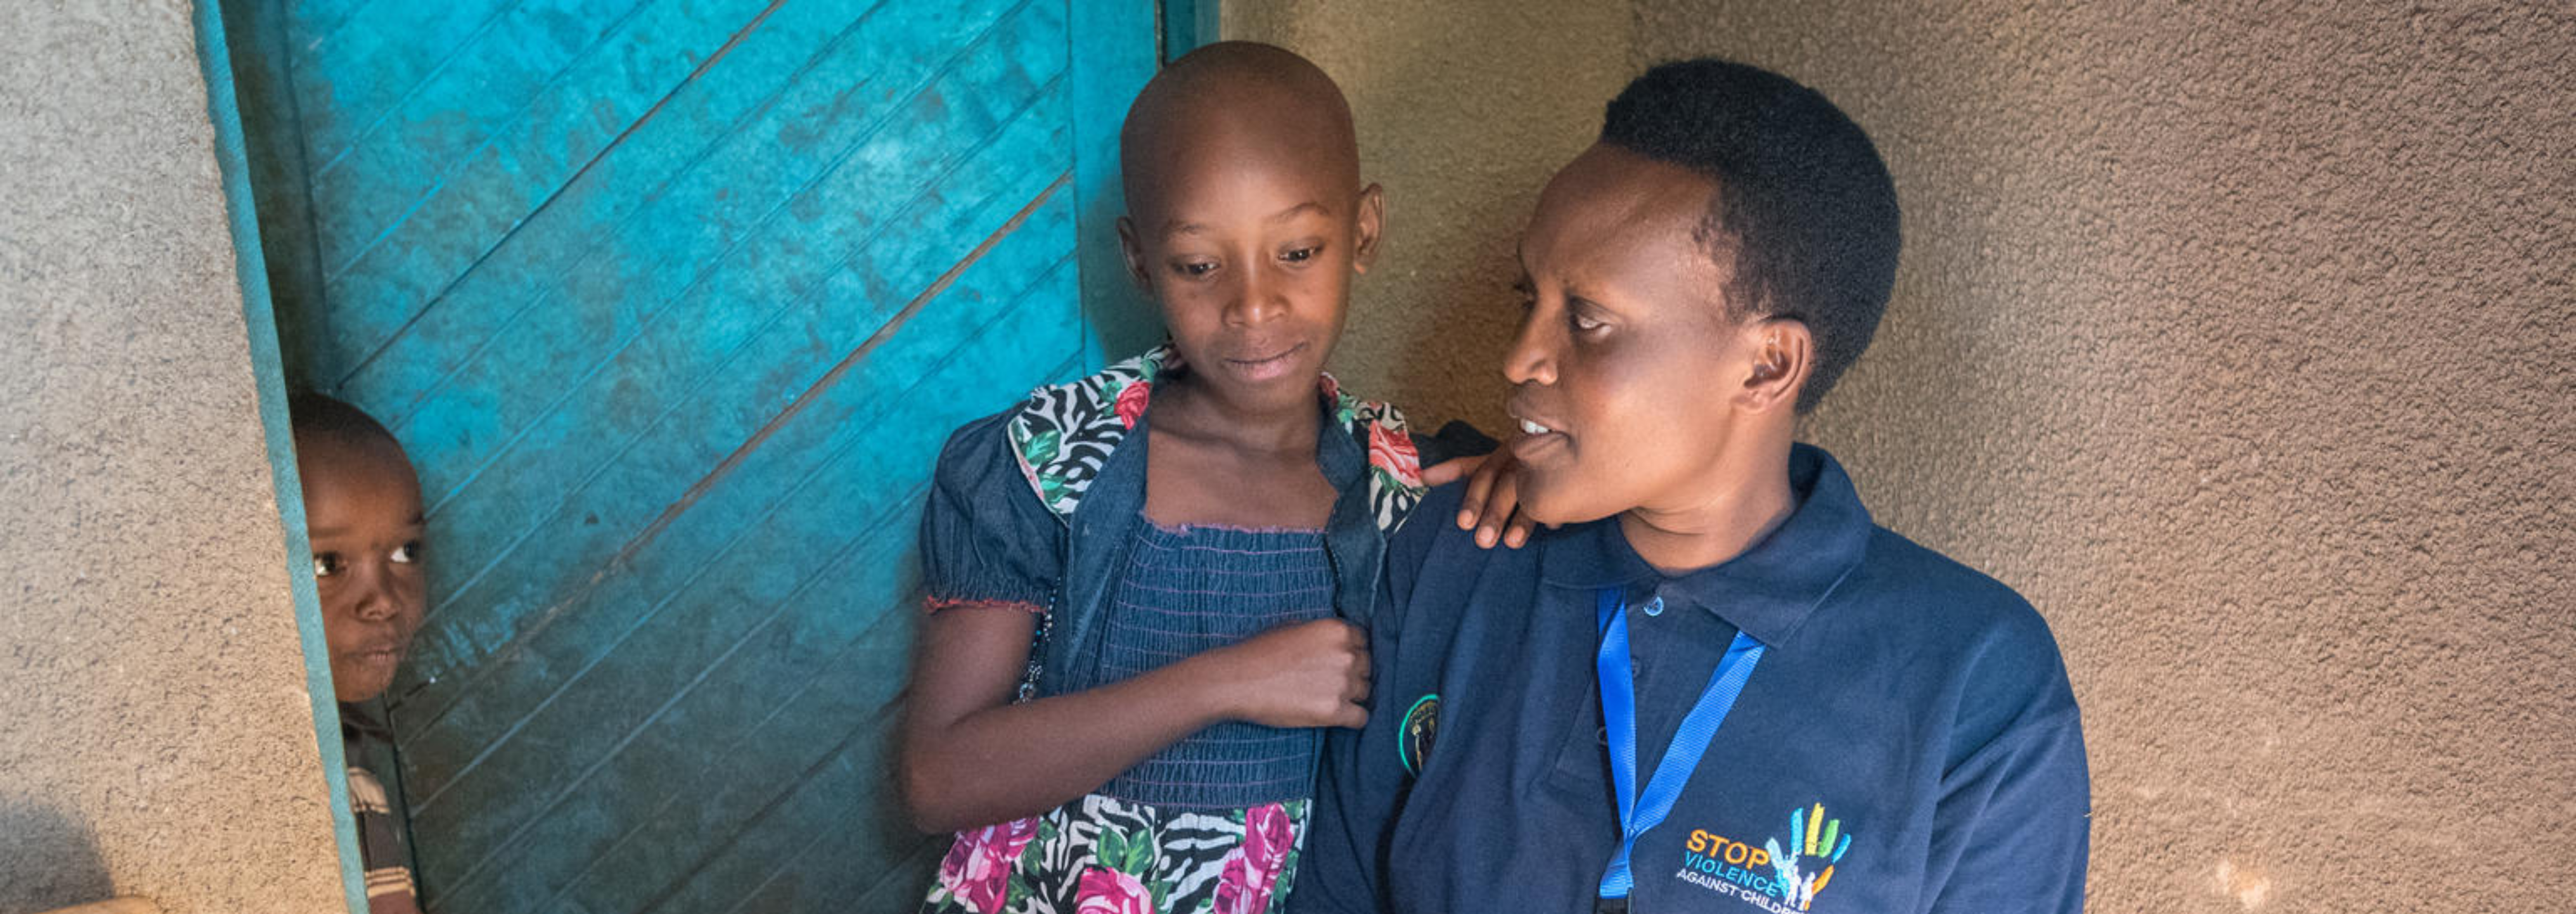 One of Rwanda’s Inshuti z’Umuryango, “Friends of the Family” assists two children.